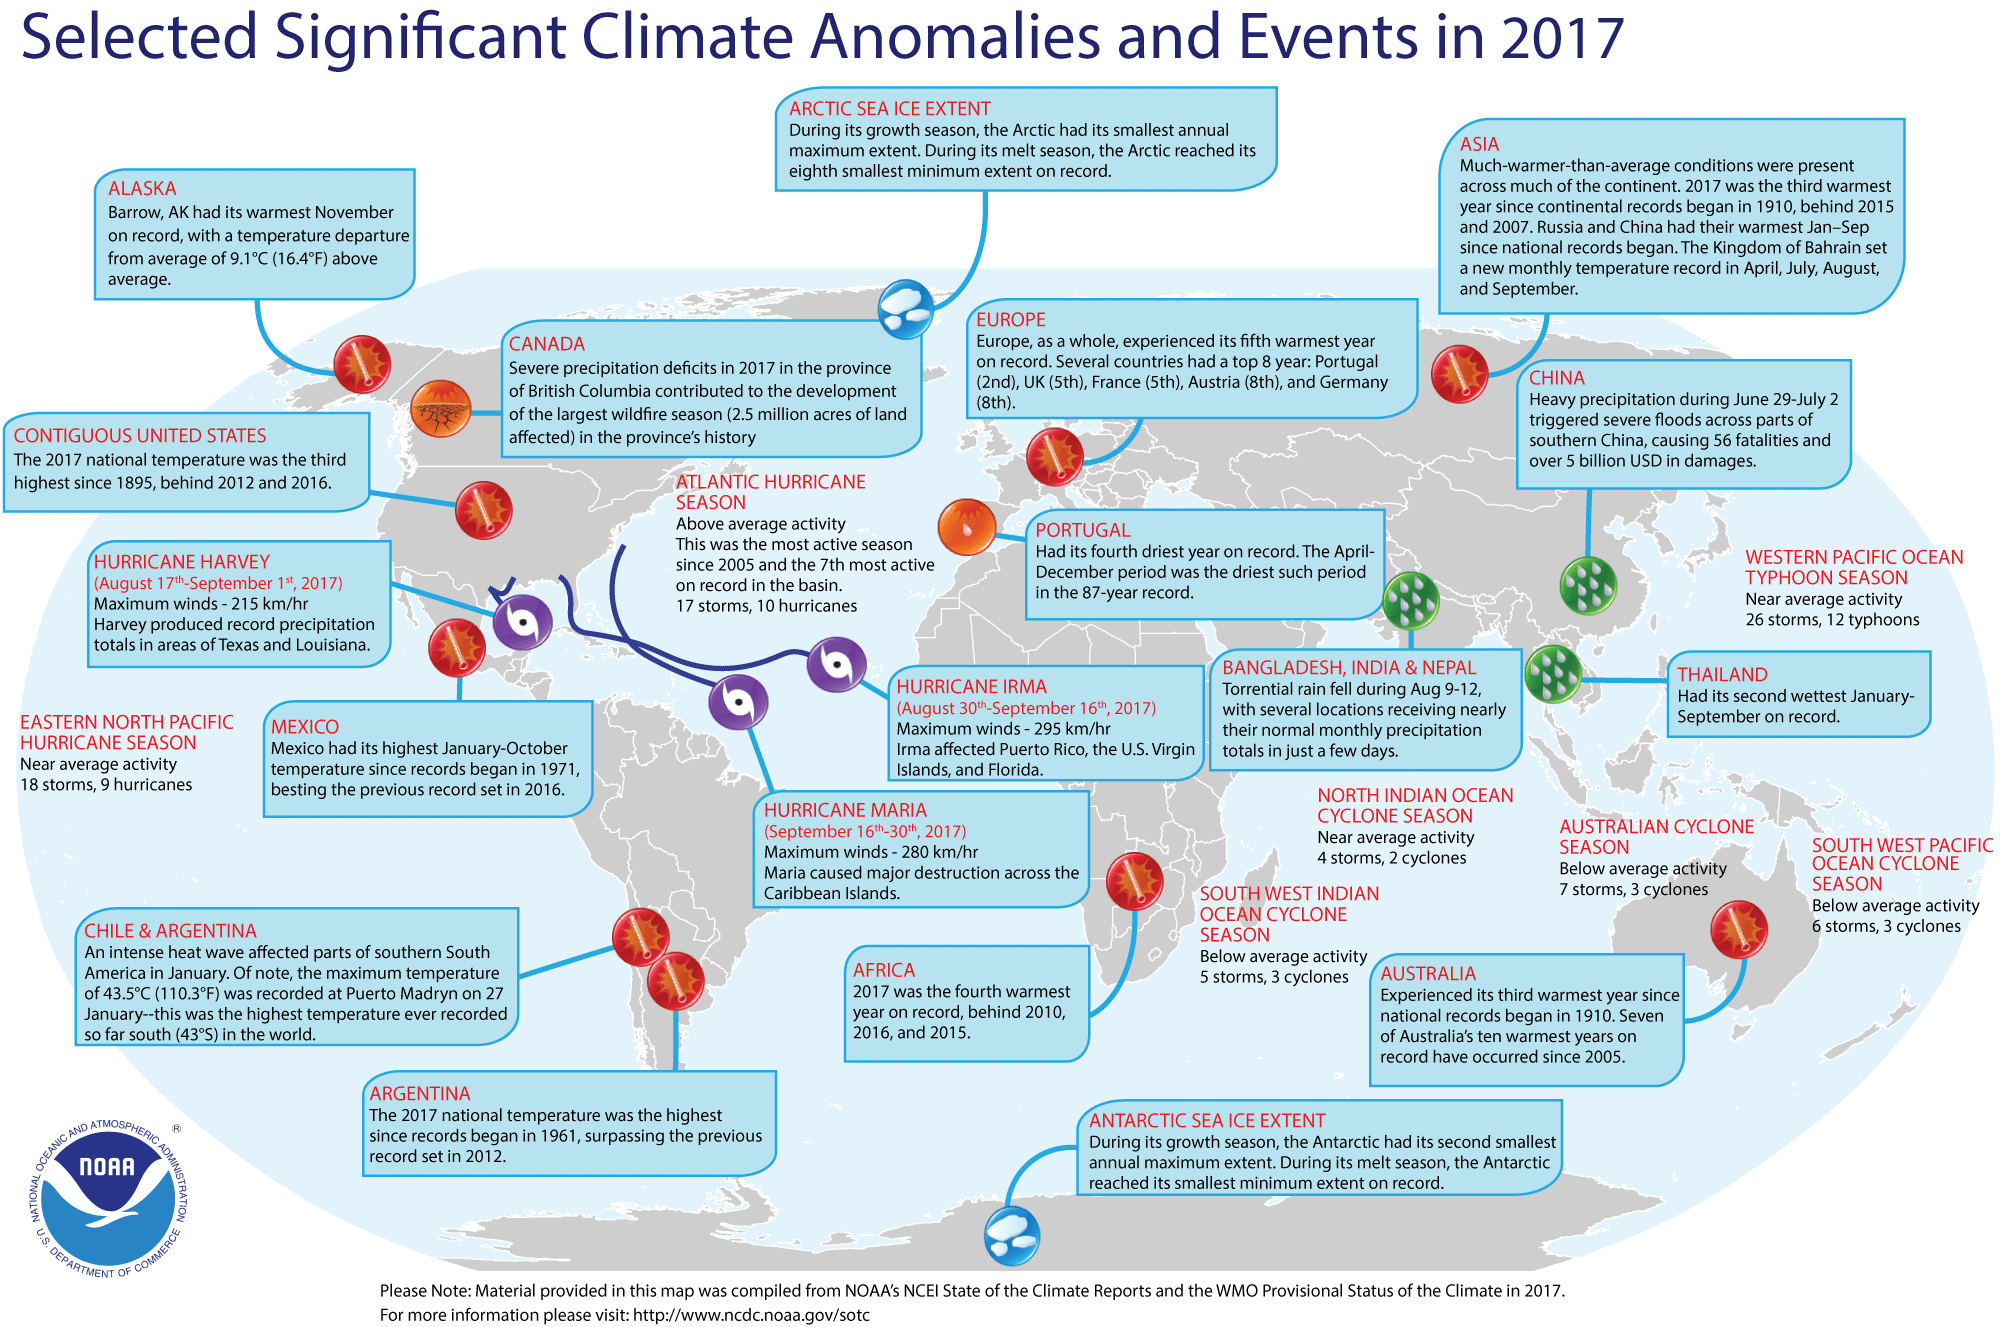 NOAA - Globale Wetteranomalien in 2017